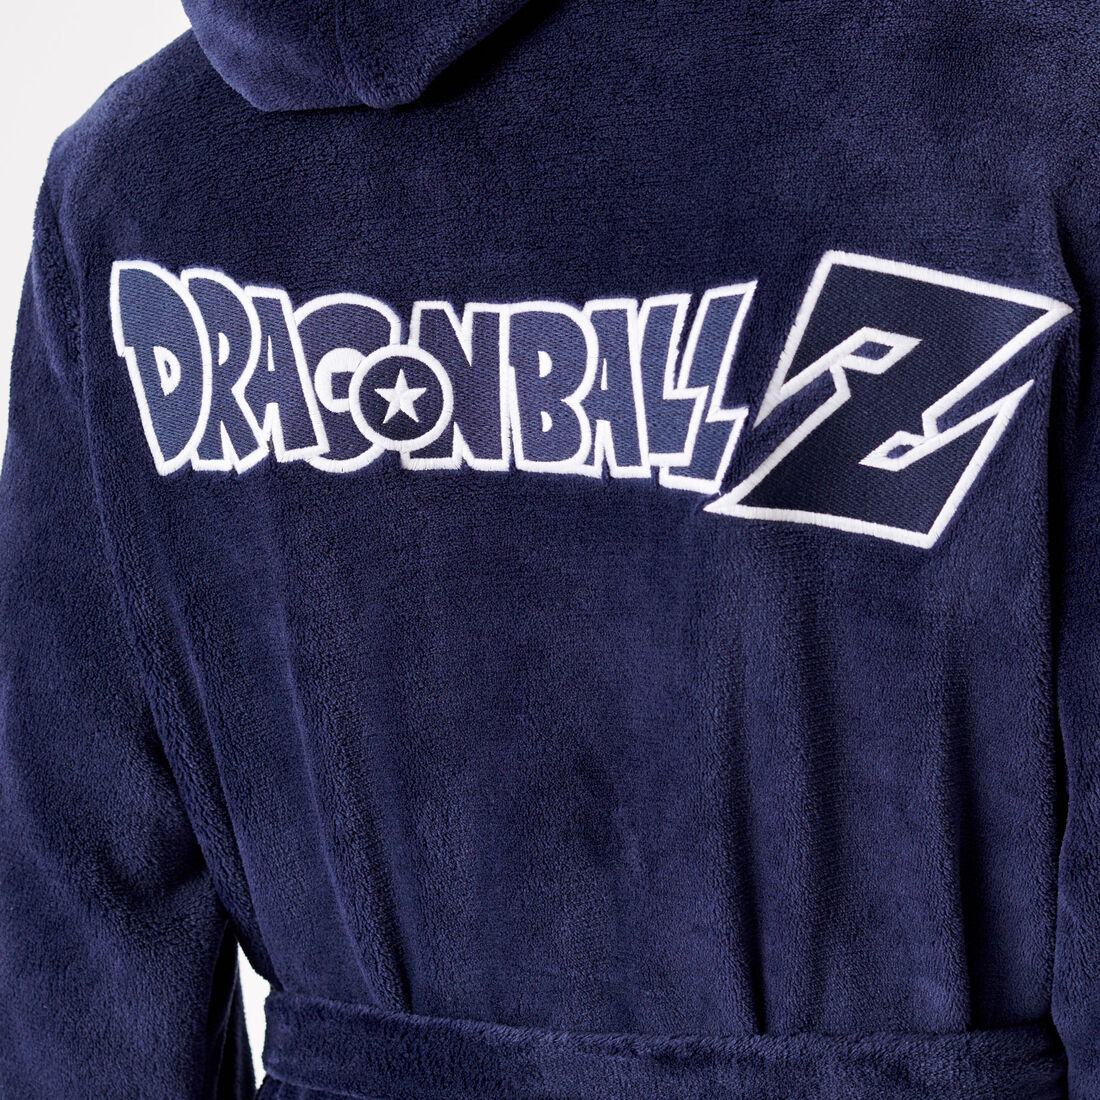 Dragon Ball Z bathrobe;